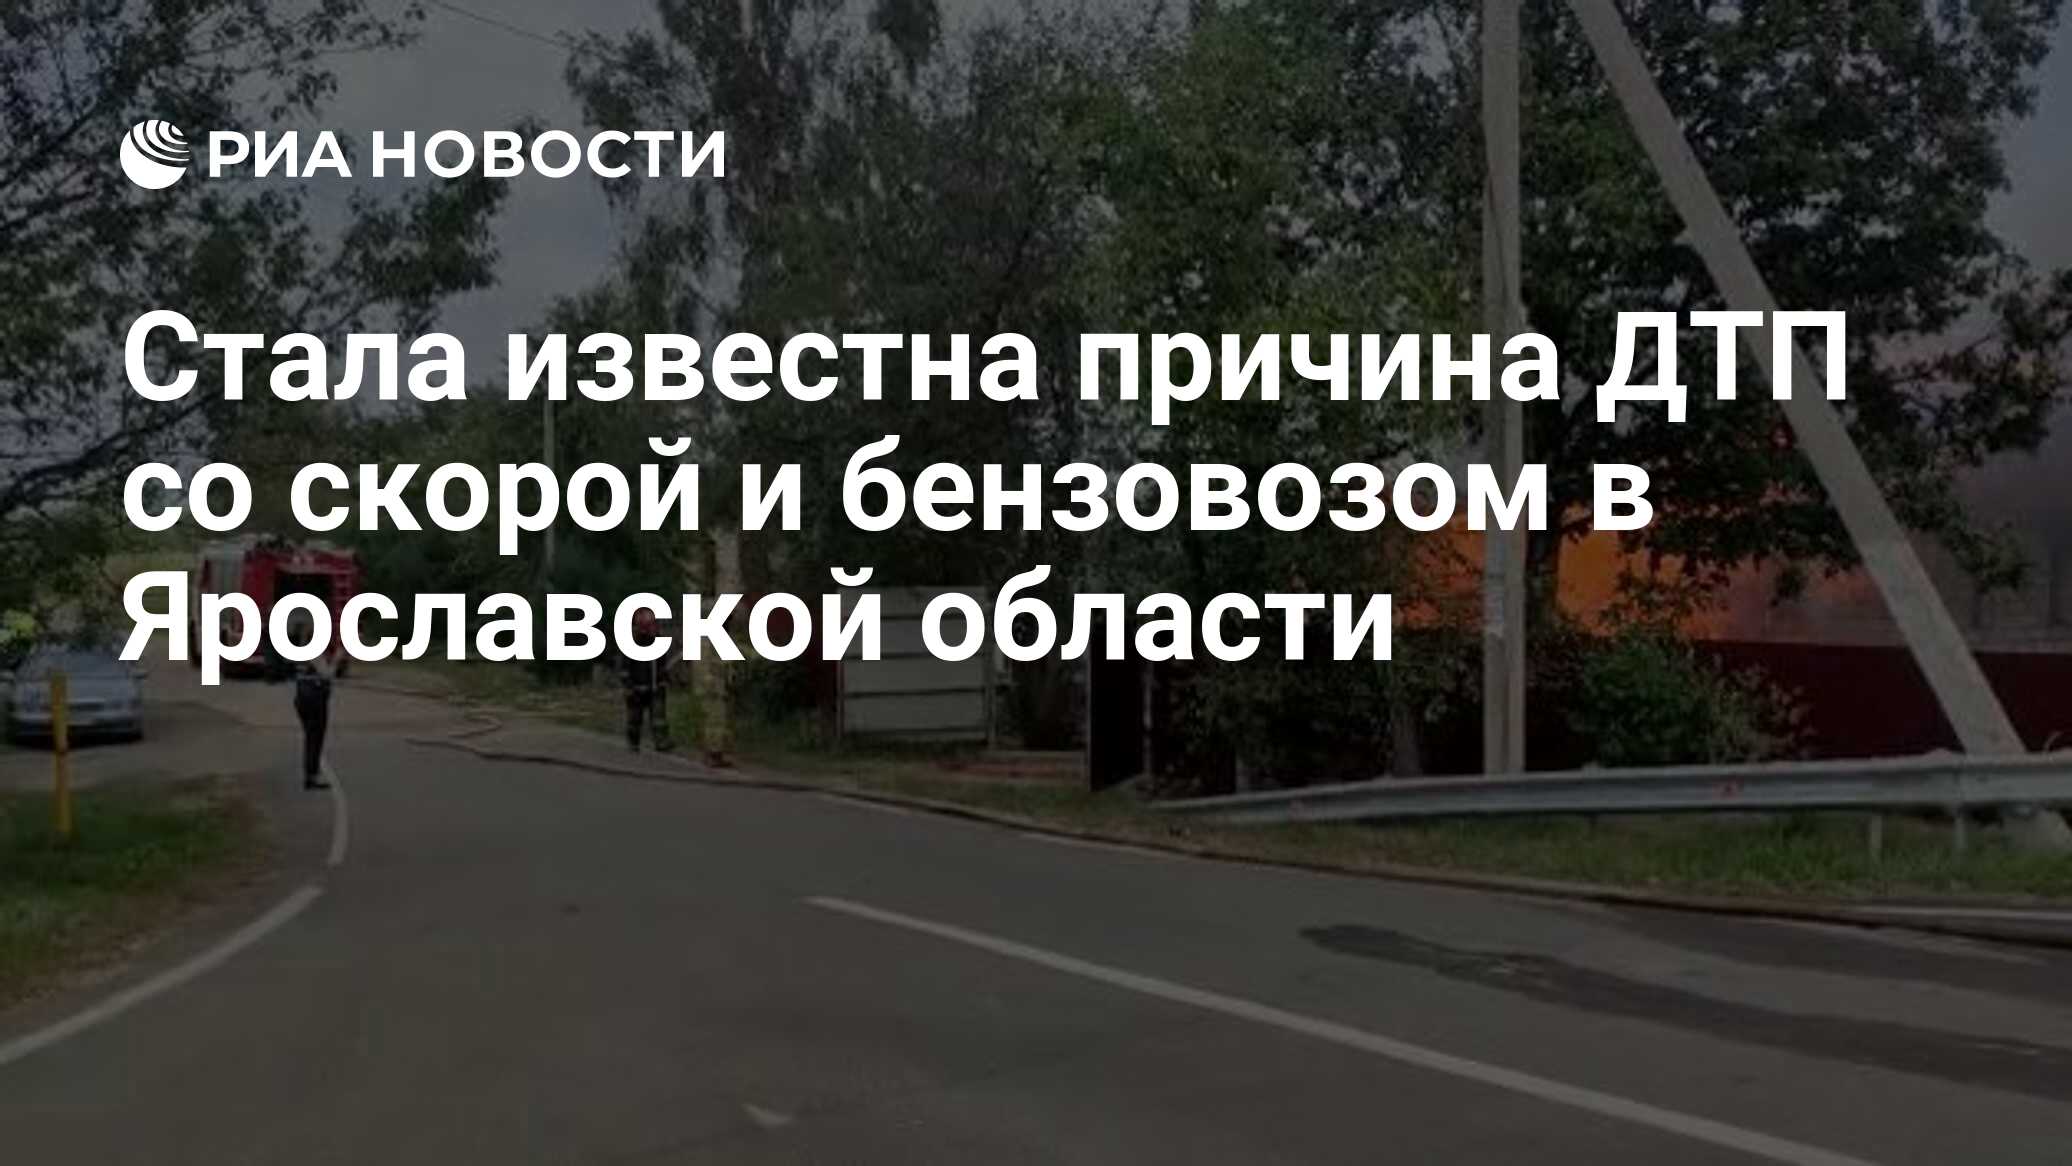 Стала известна причина ДТП со скорой и бензовозом в Ярославской области -  РИА Новости, 30.08.2022